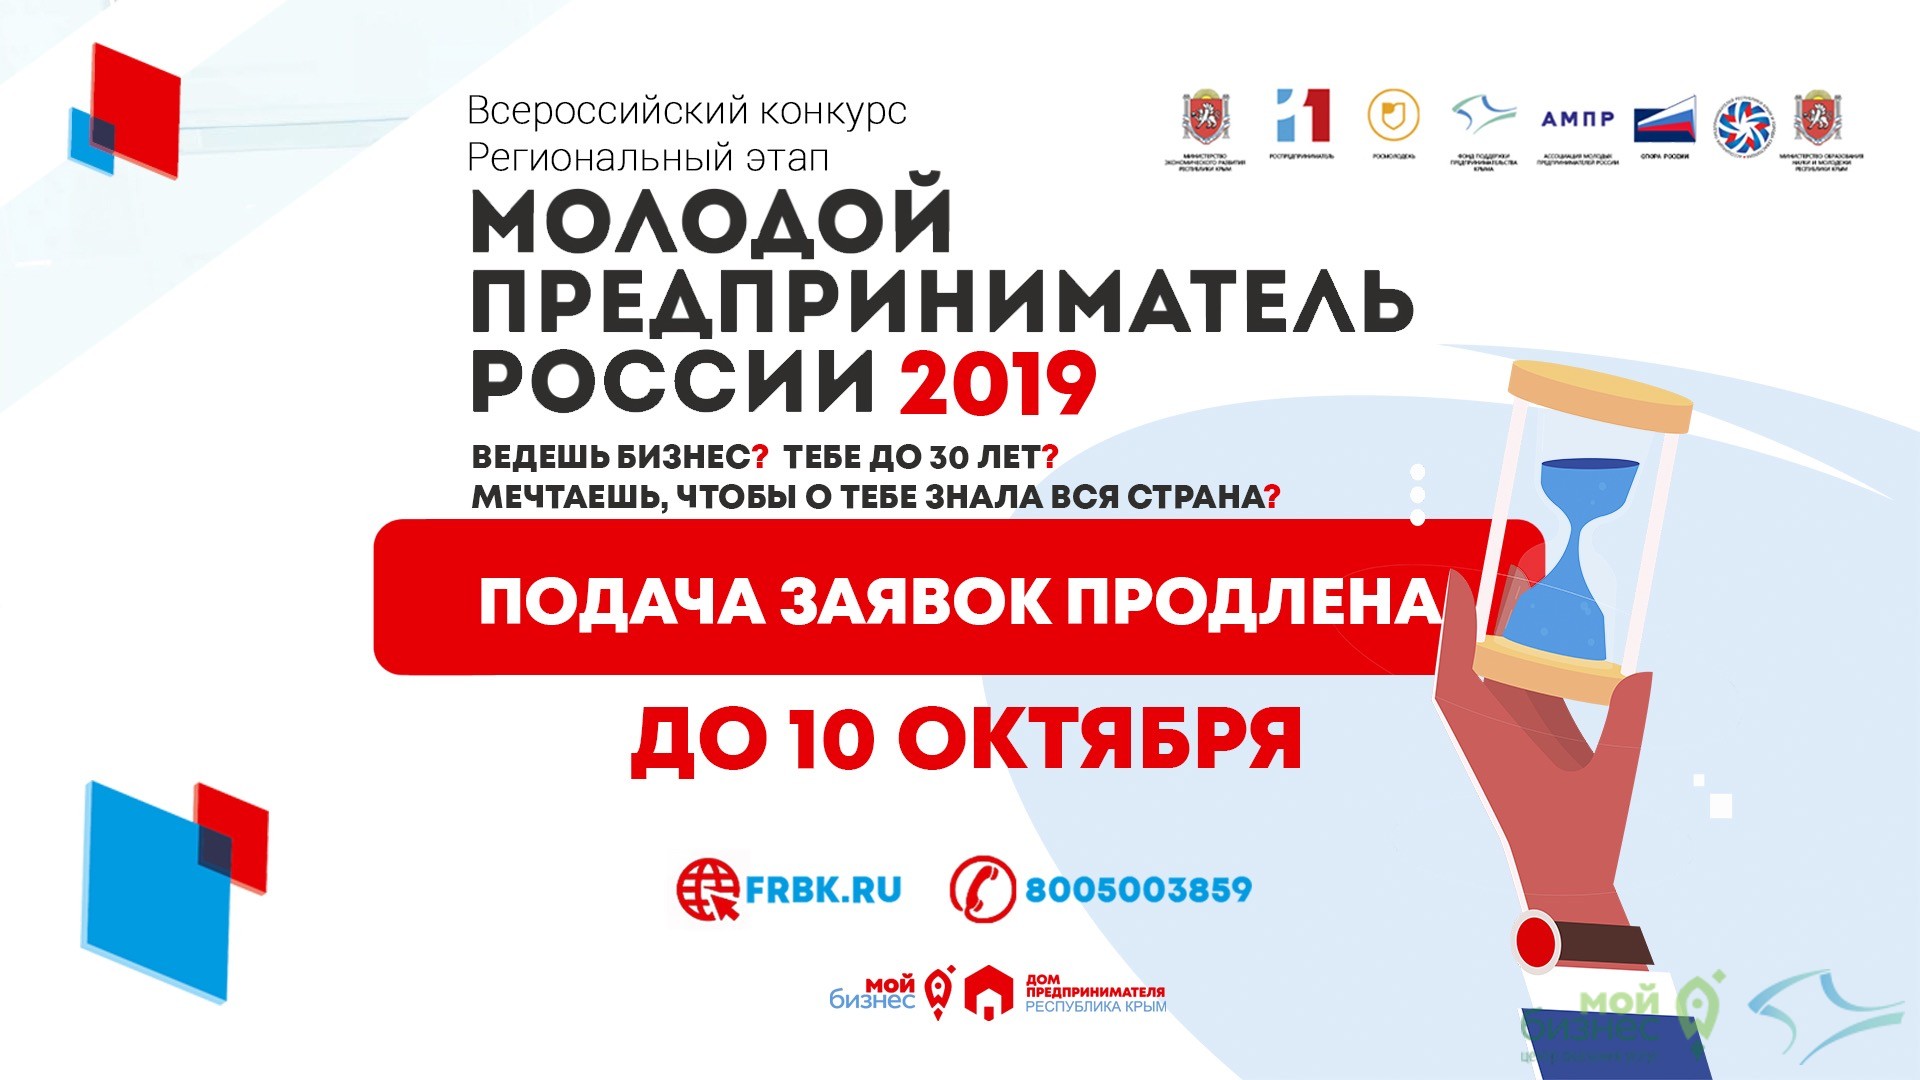 Внимание! Продлена регистрация в конкурсе «Молодой предприниматель России» до 10 октября!